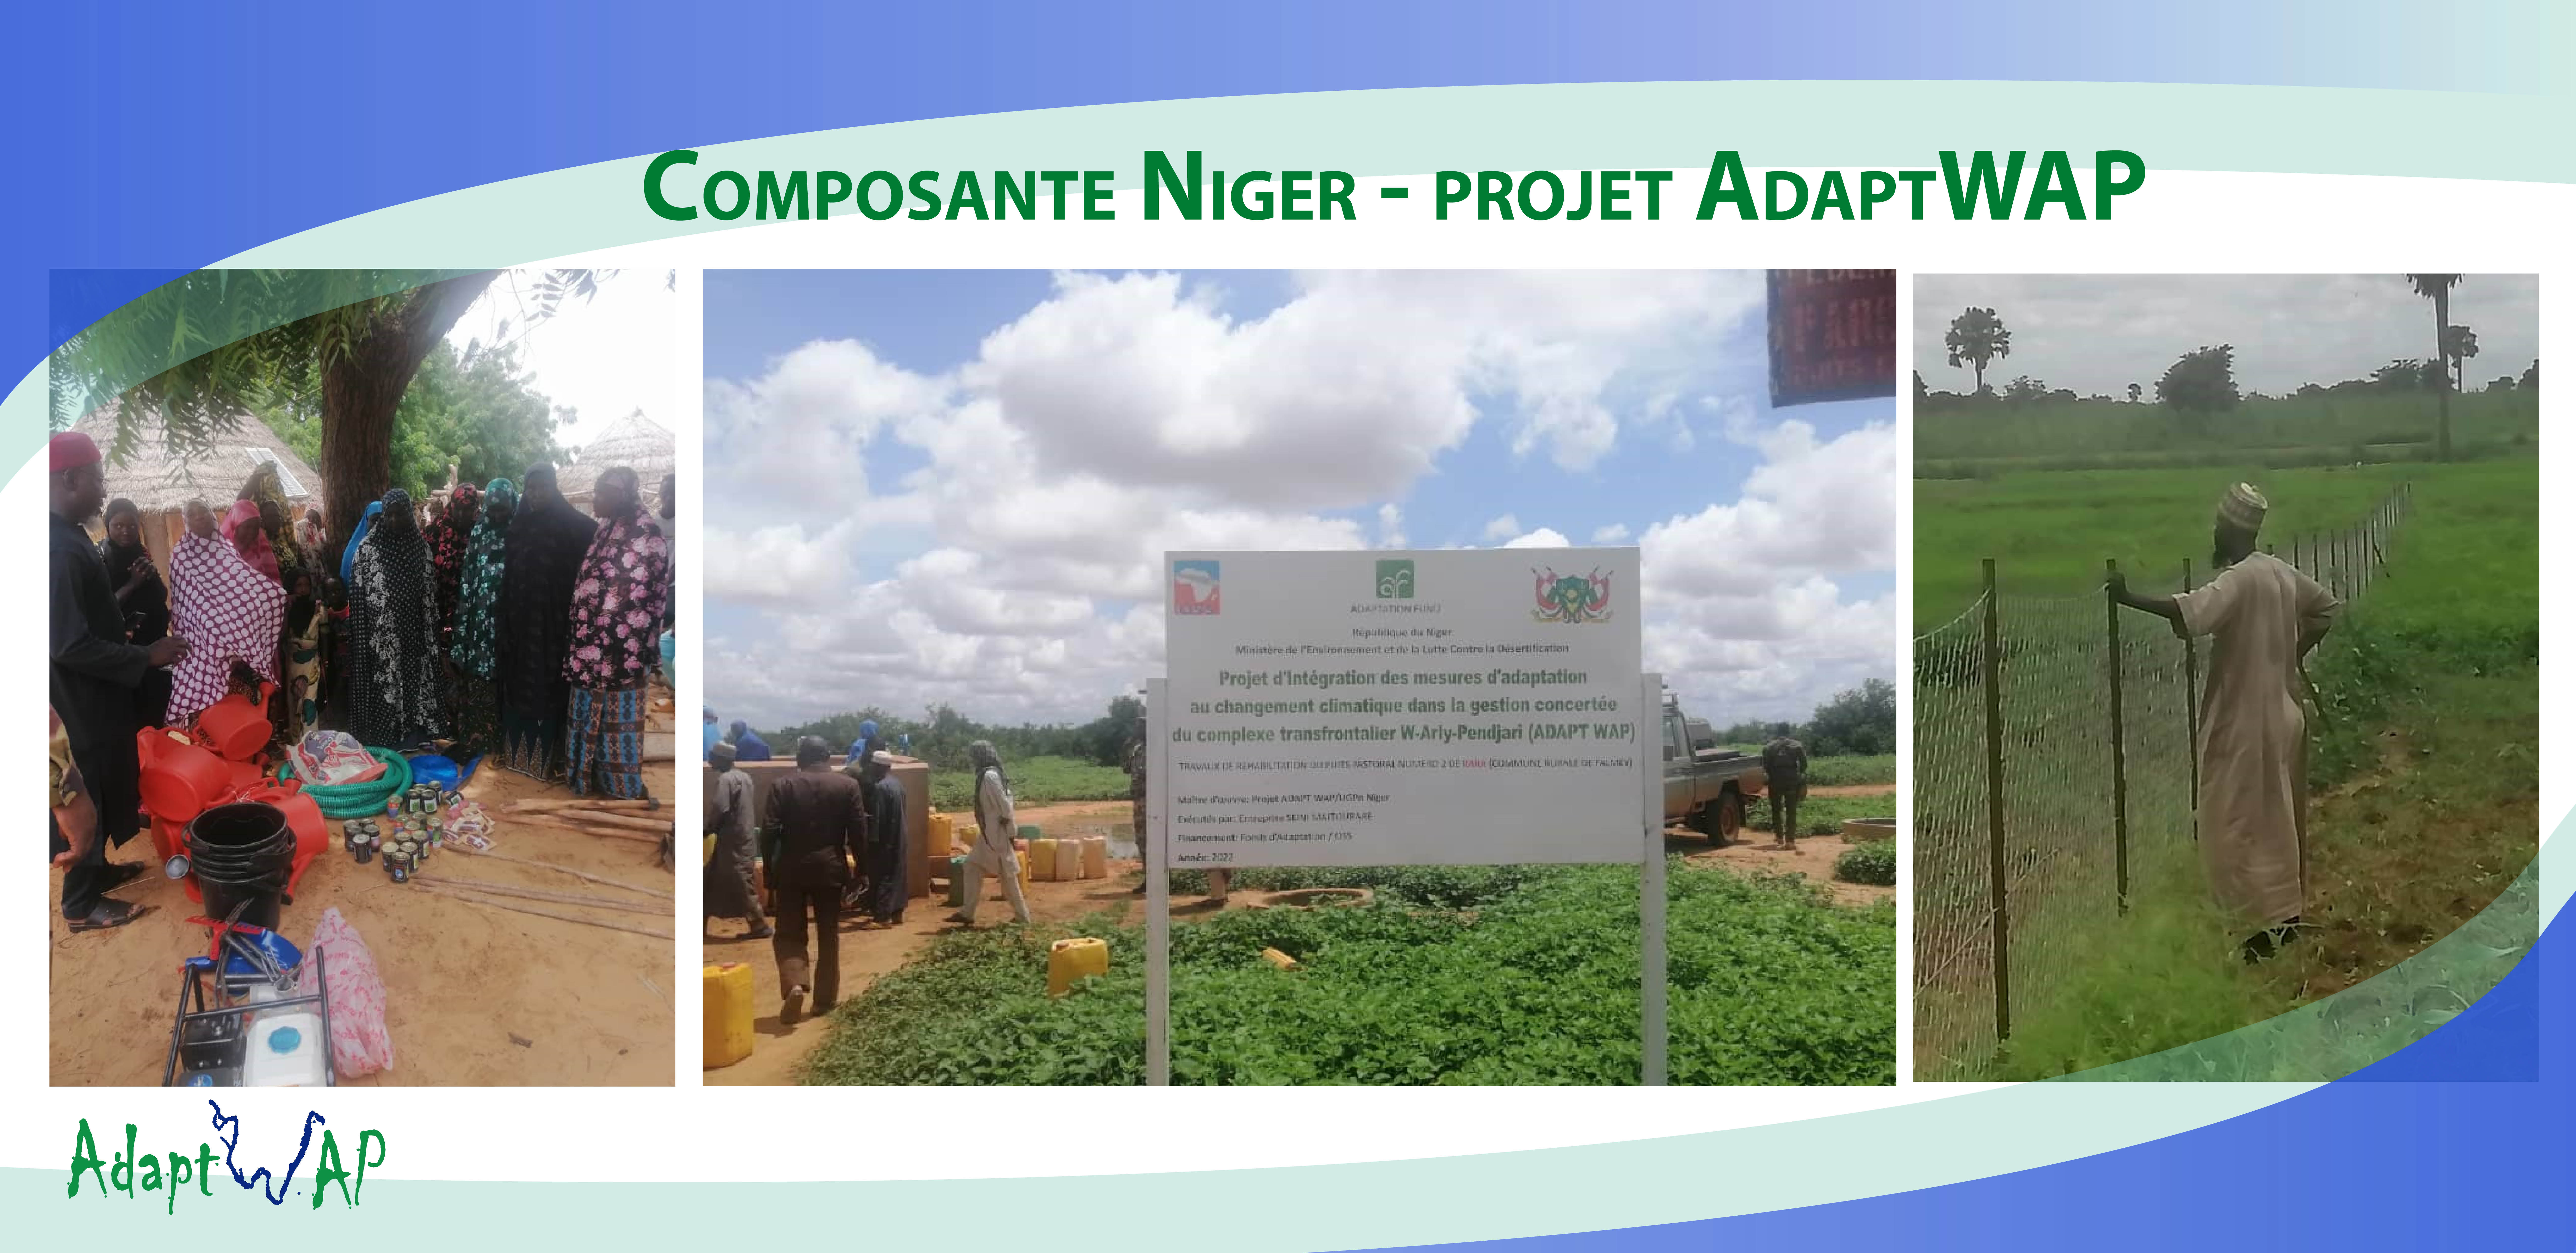  La composante Niger du projet AdaptWAP équipe des groupes de femmes maraîchères en matériel d’irrigation, août 2022